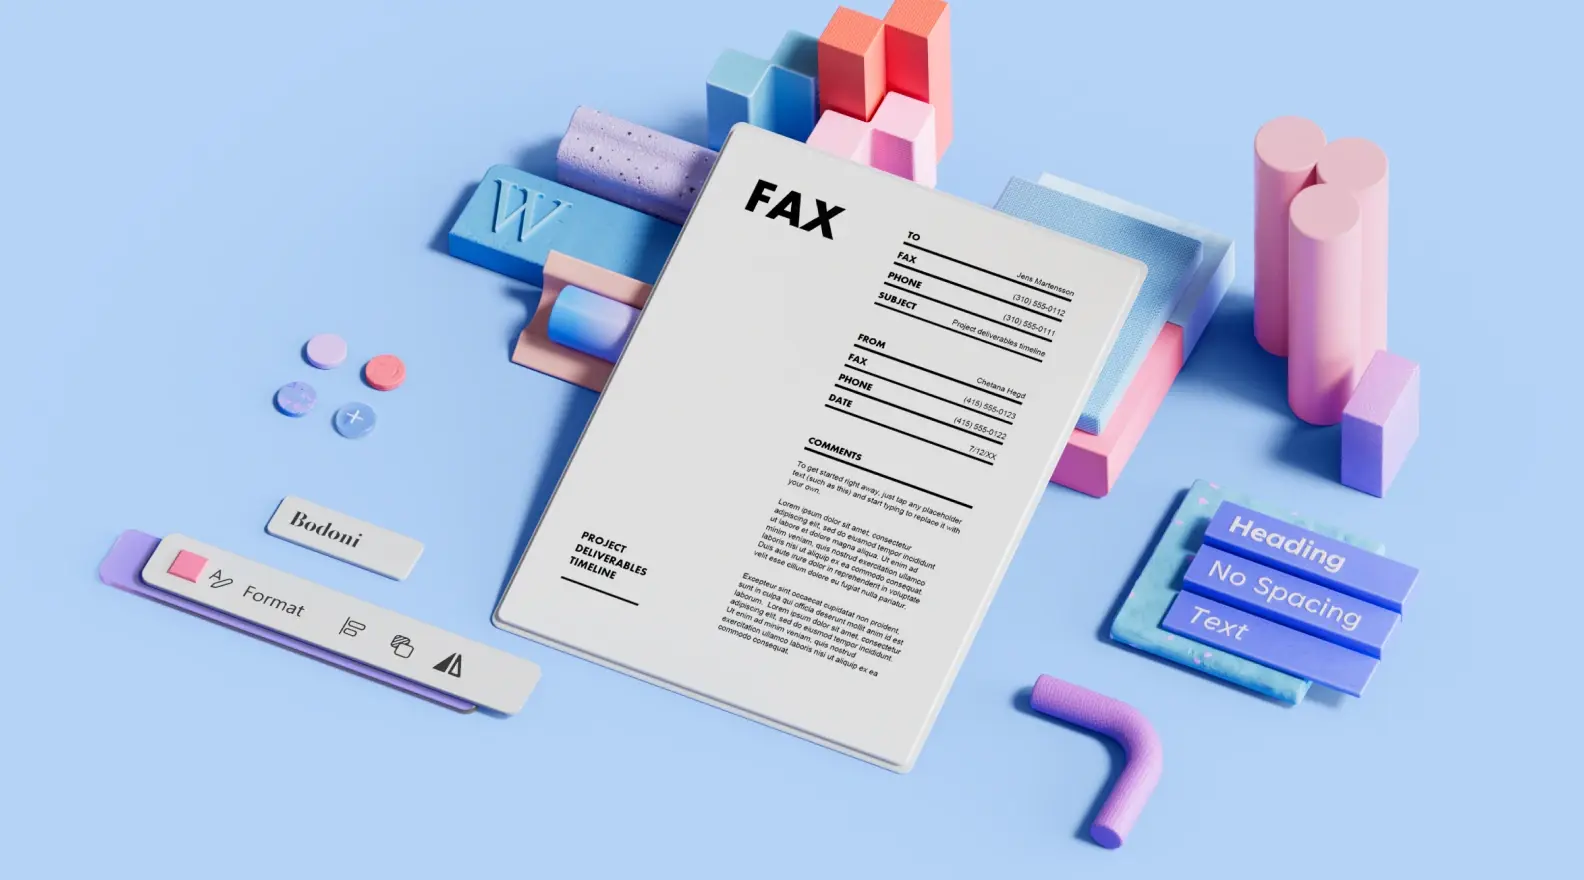 Plantilla de portada de fax rodeada de elementos de diseño 3D